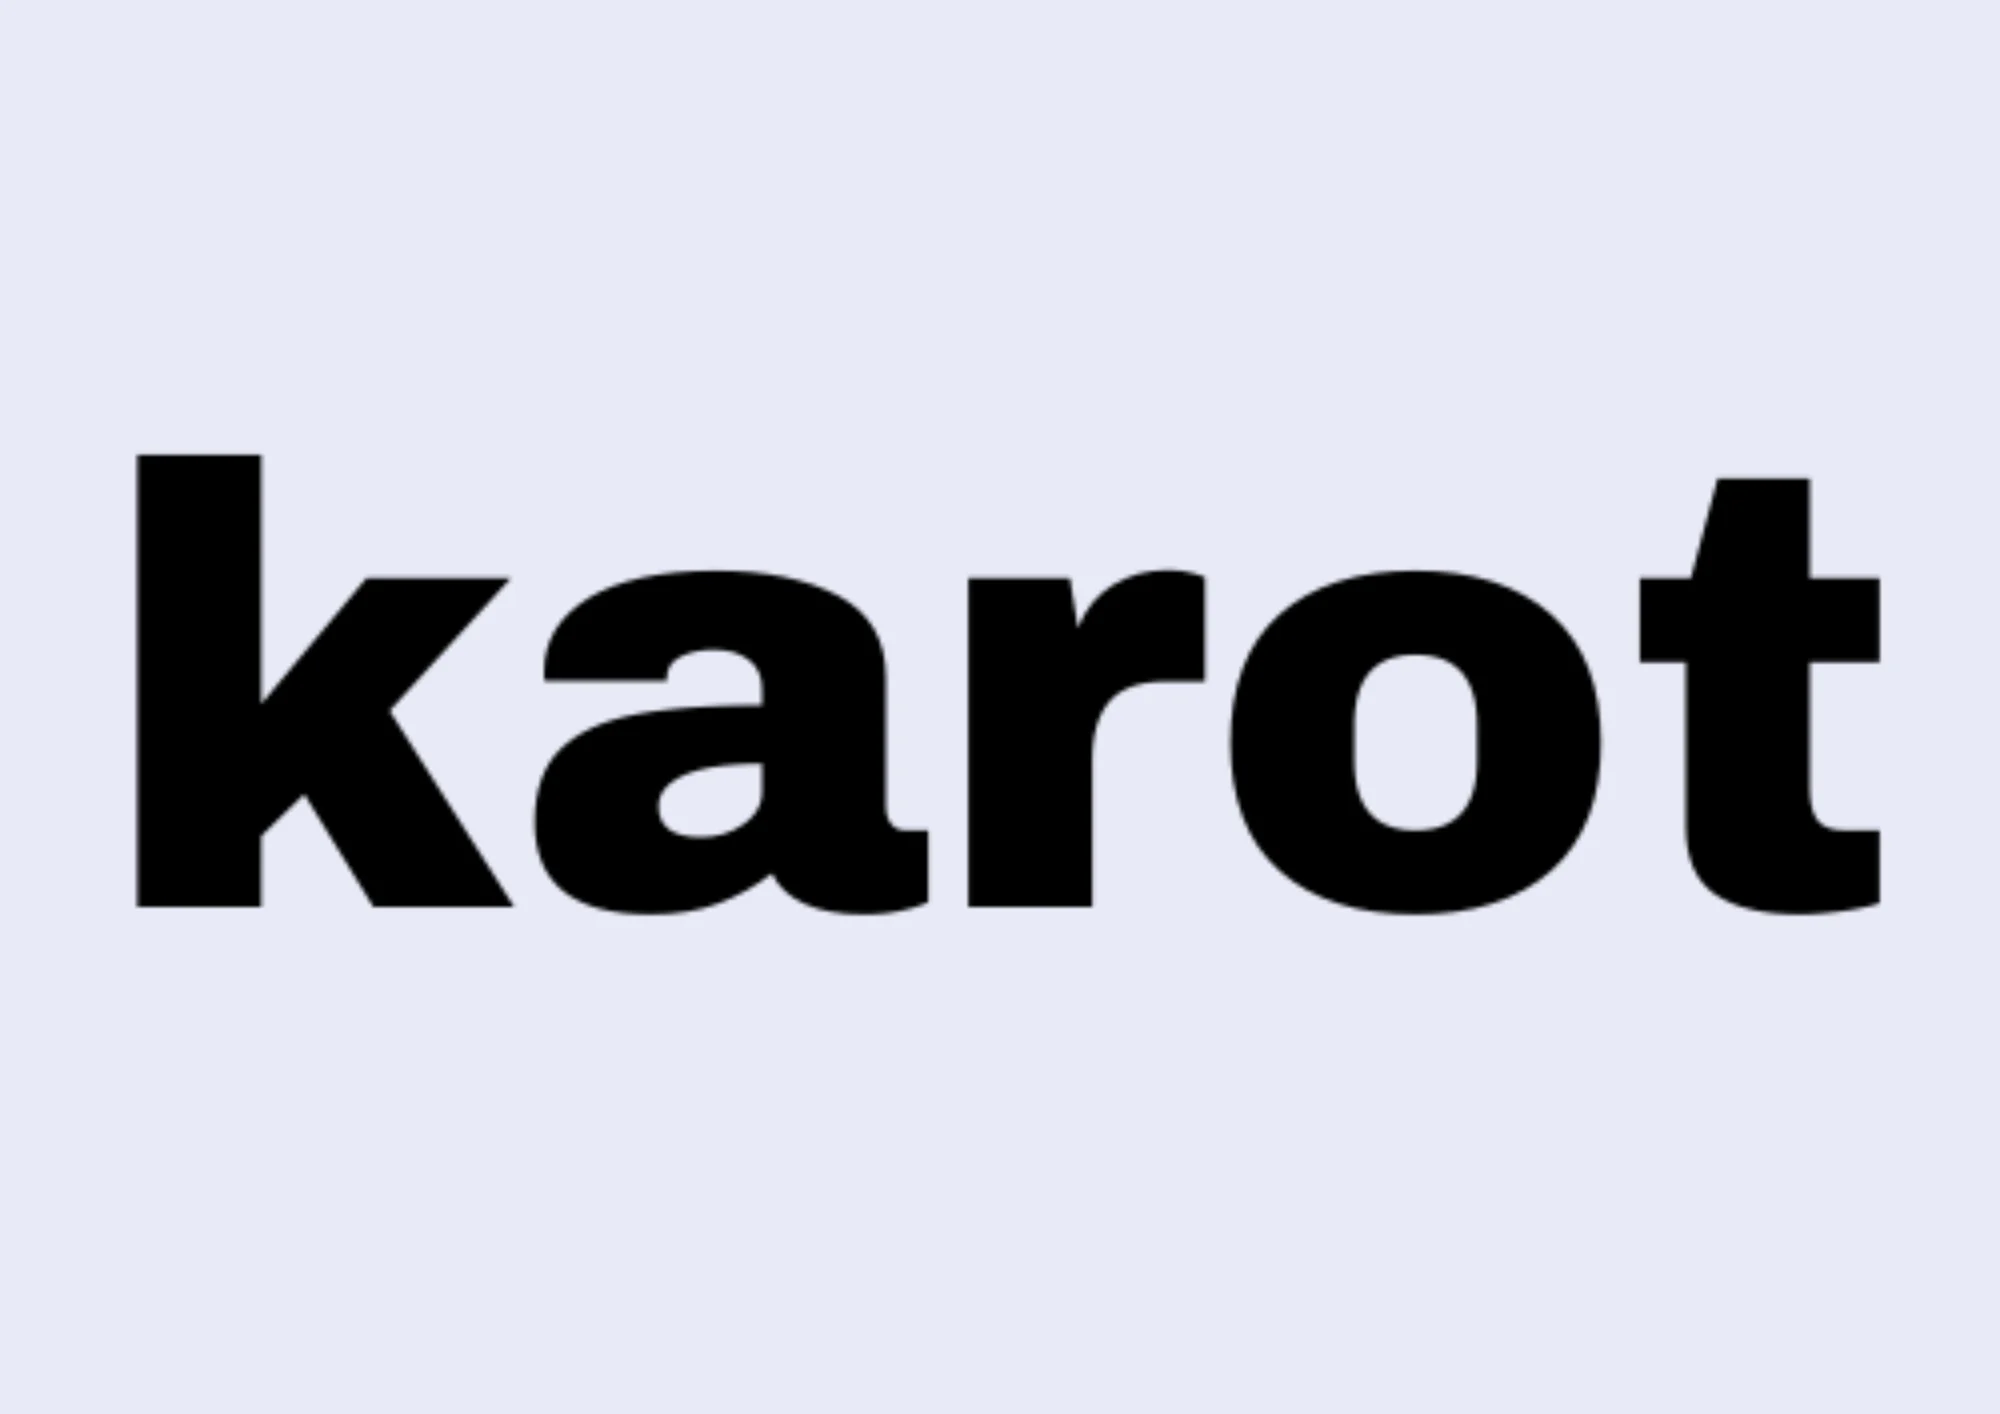 Karot